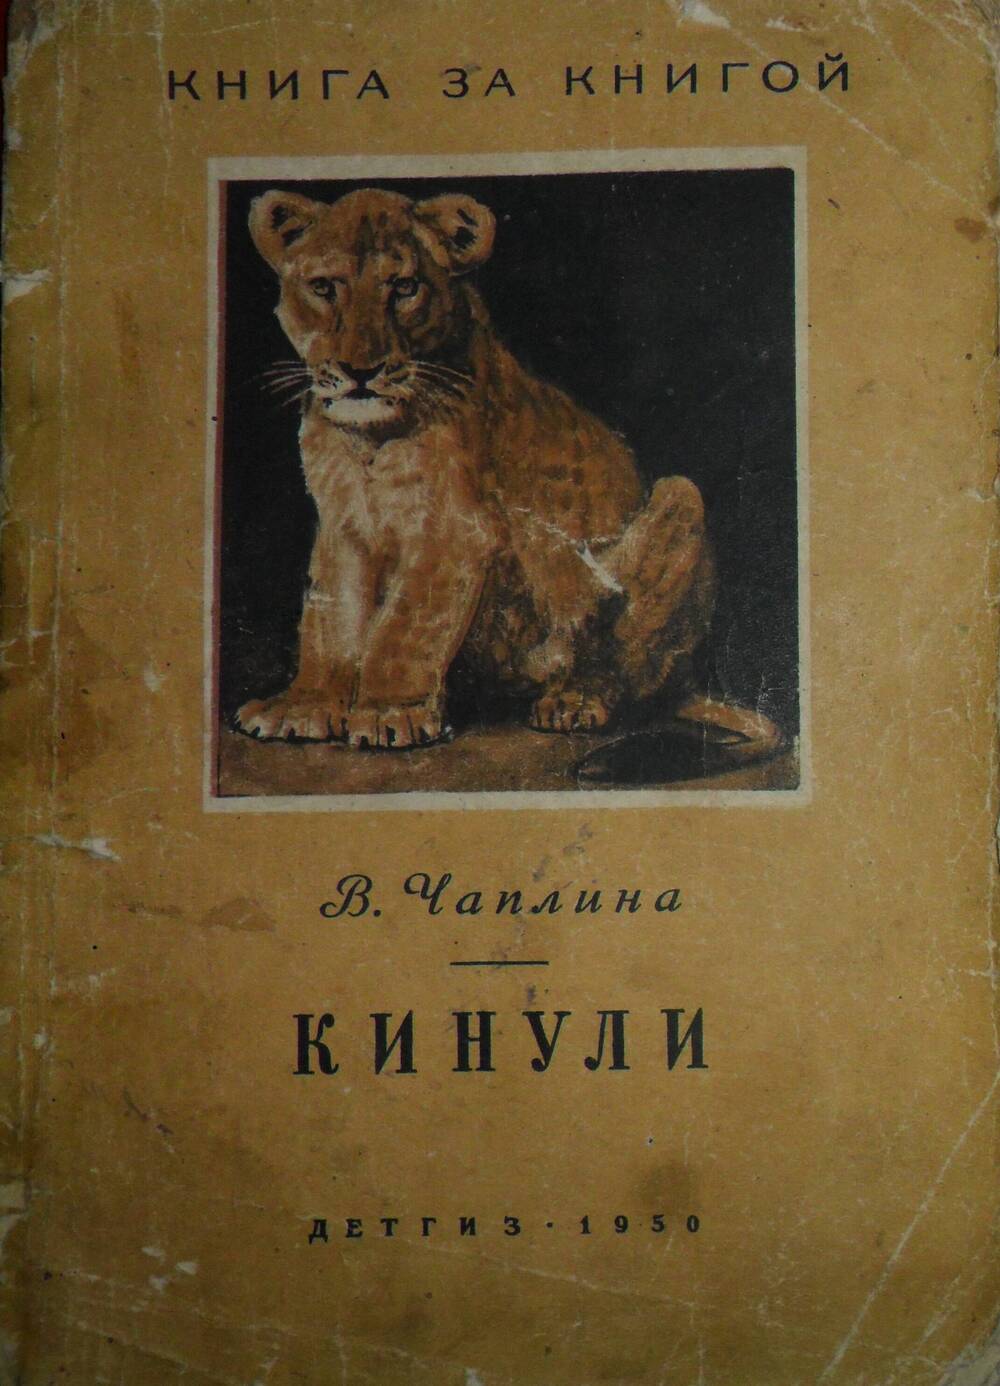 Книга Кинули В.Чаплина, Детиздат, 1950 г.